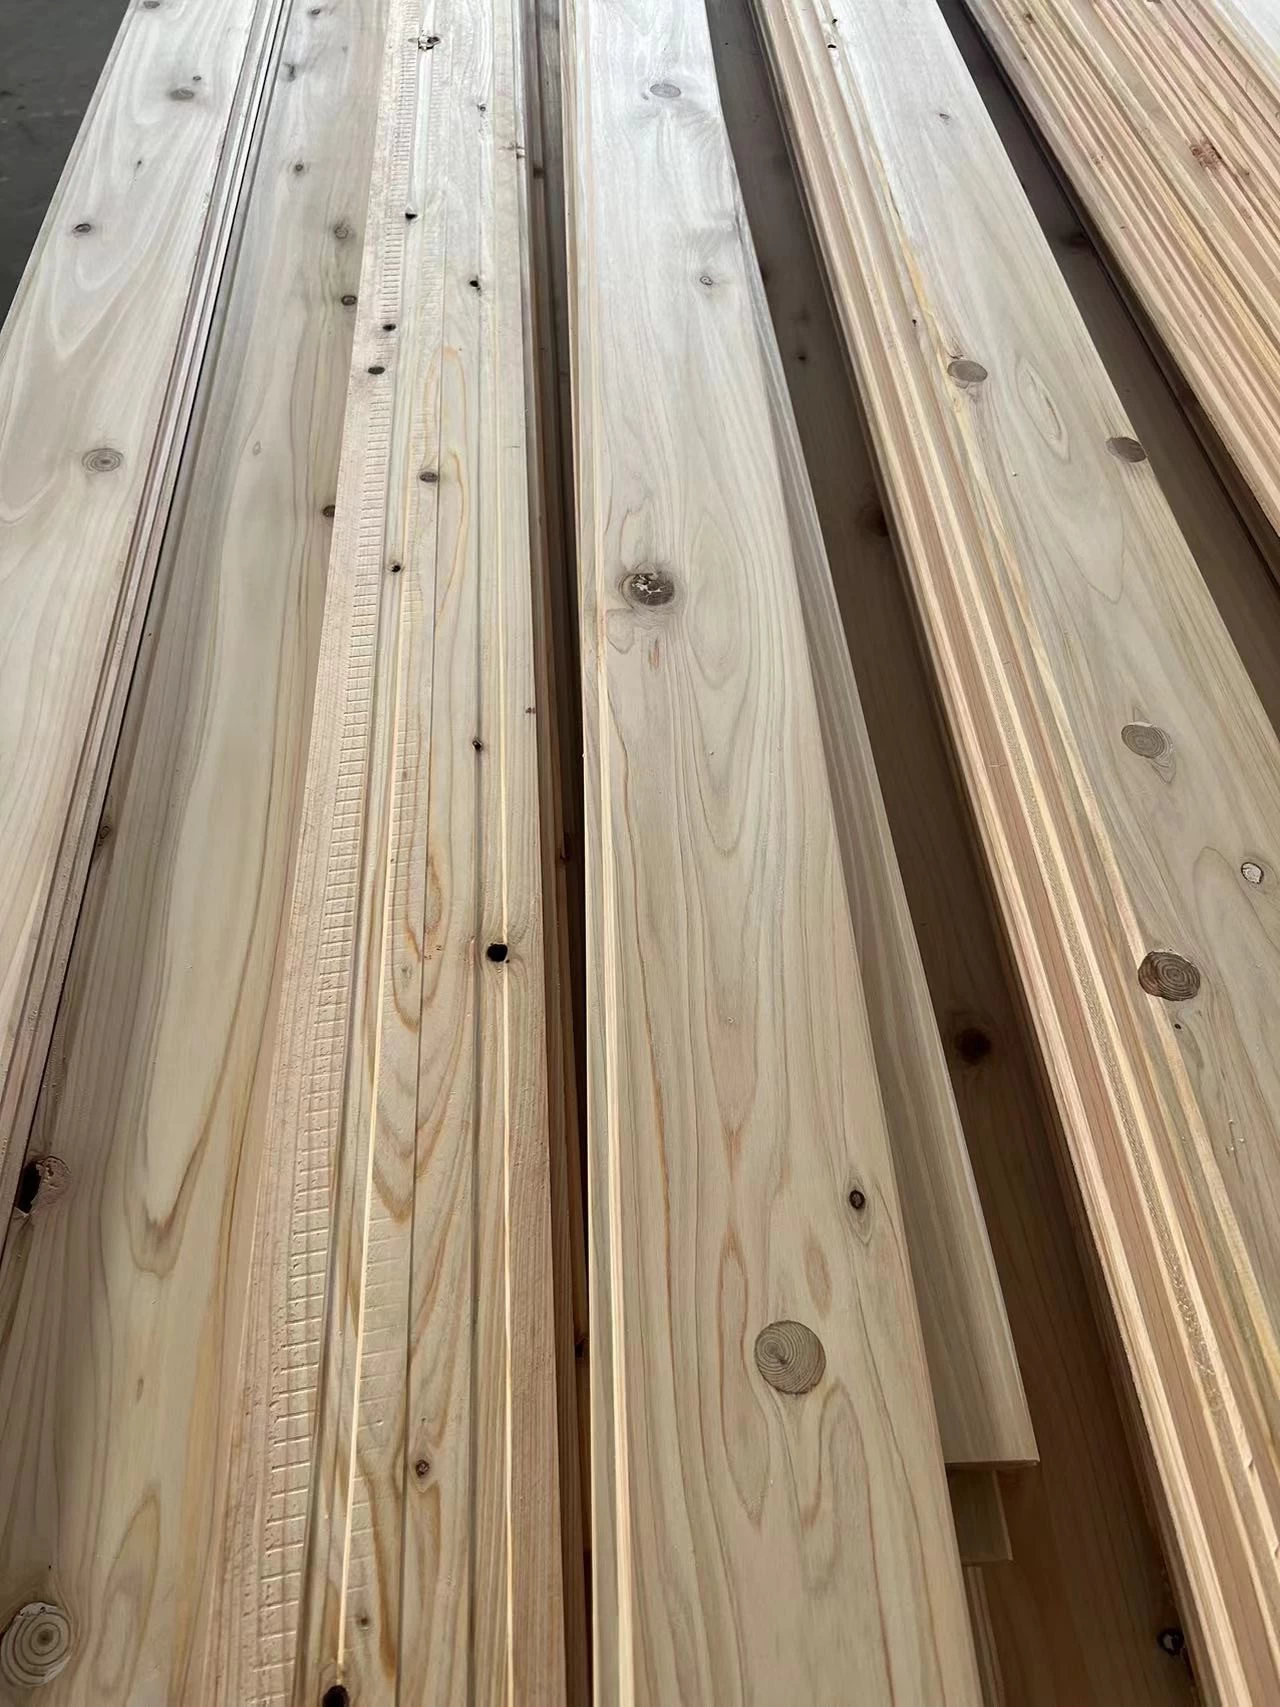 Cypress wood wall panels